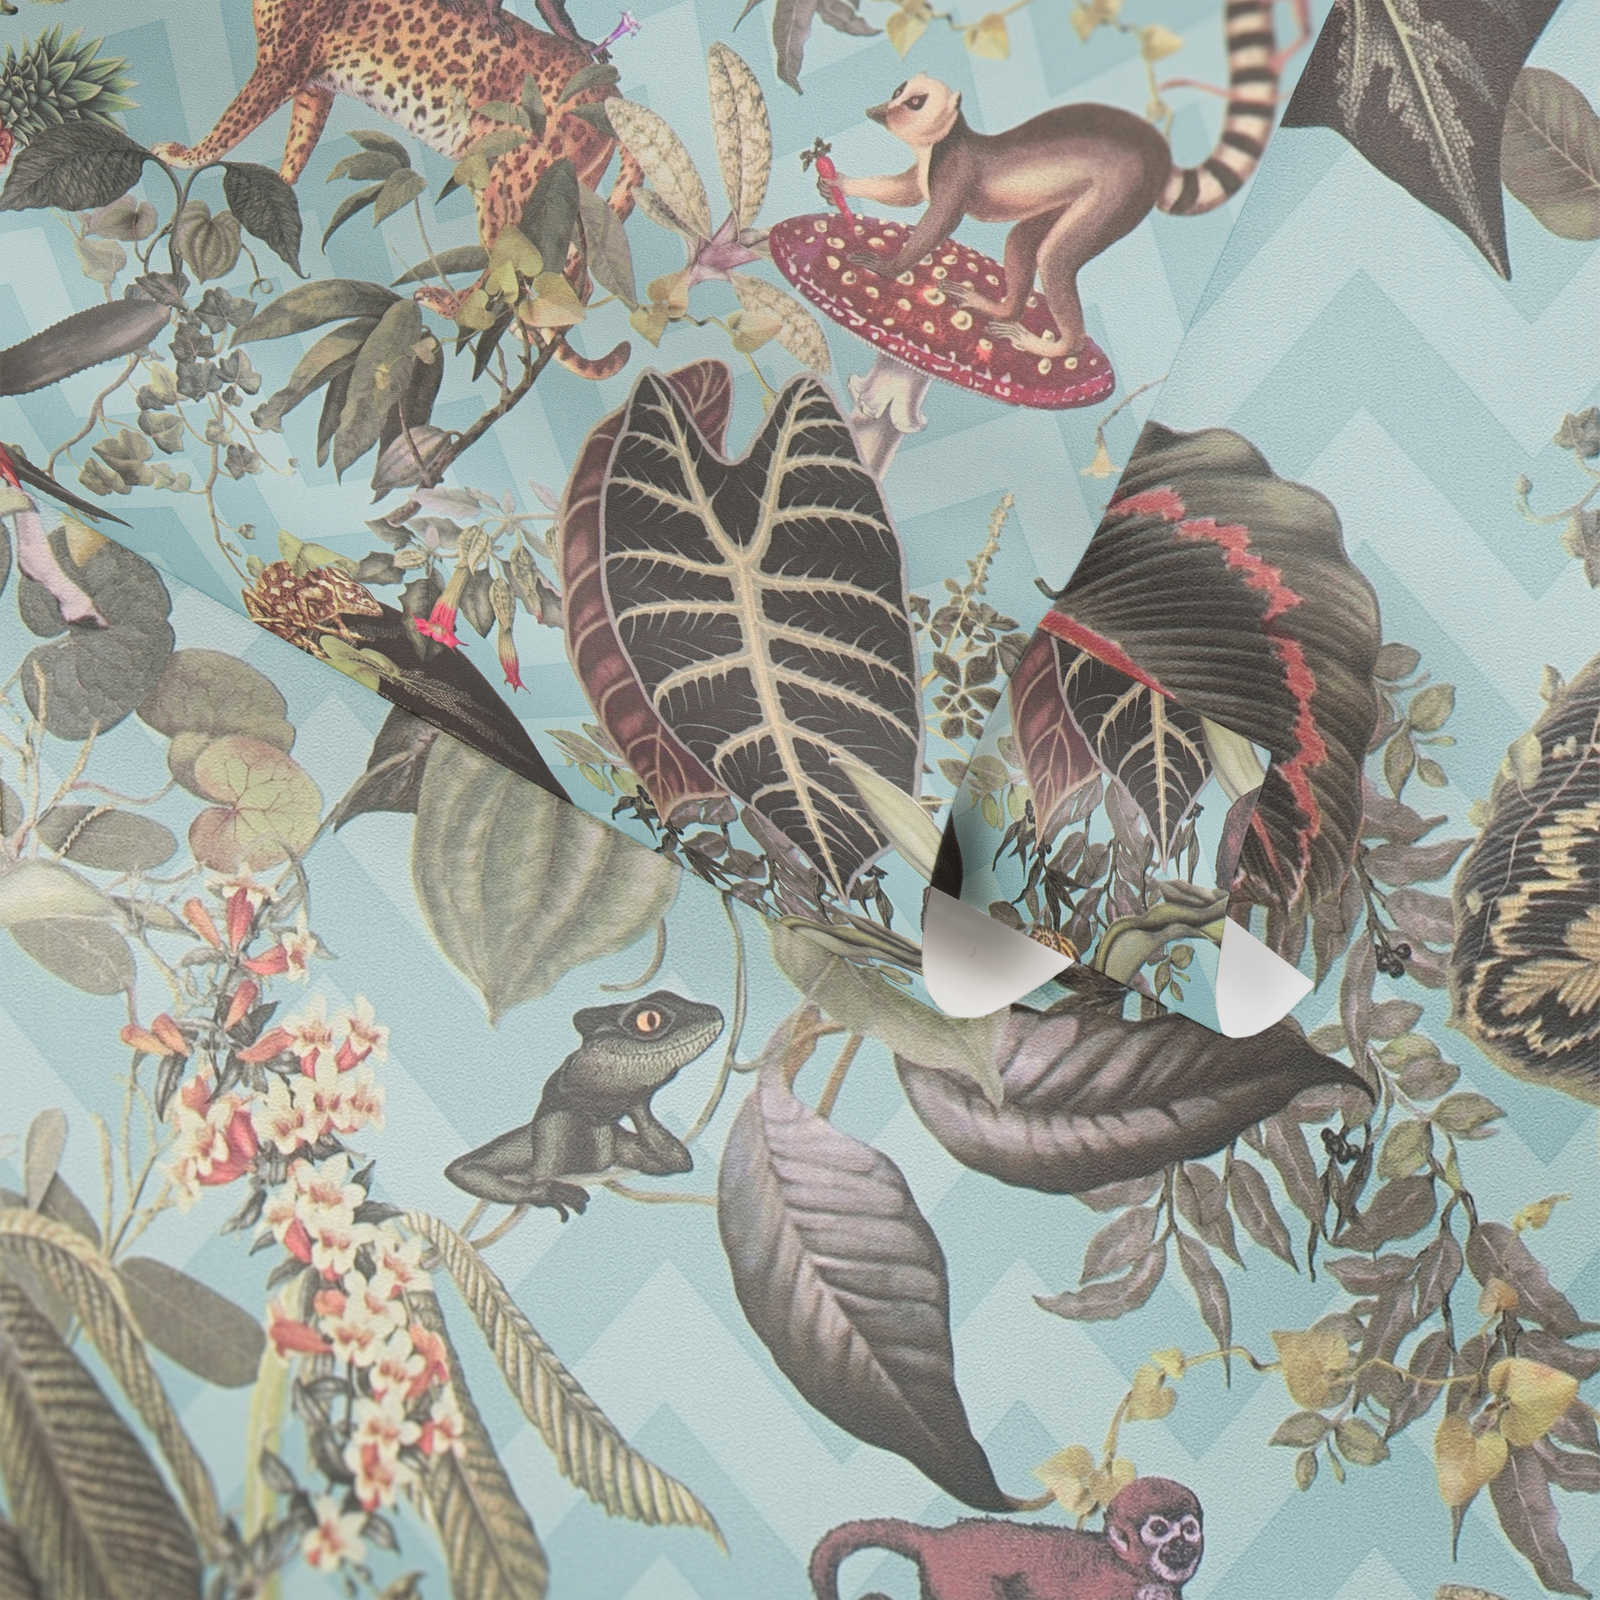             Designer Tapete MICHALSKY Dschungel Blätter & Tiere – Blau, Bunt, Grün
        